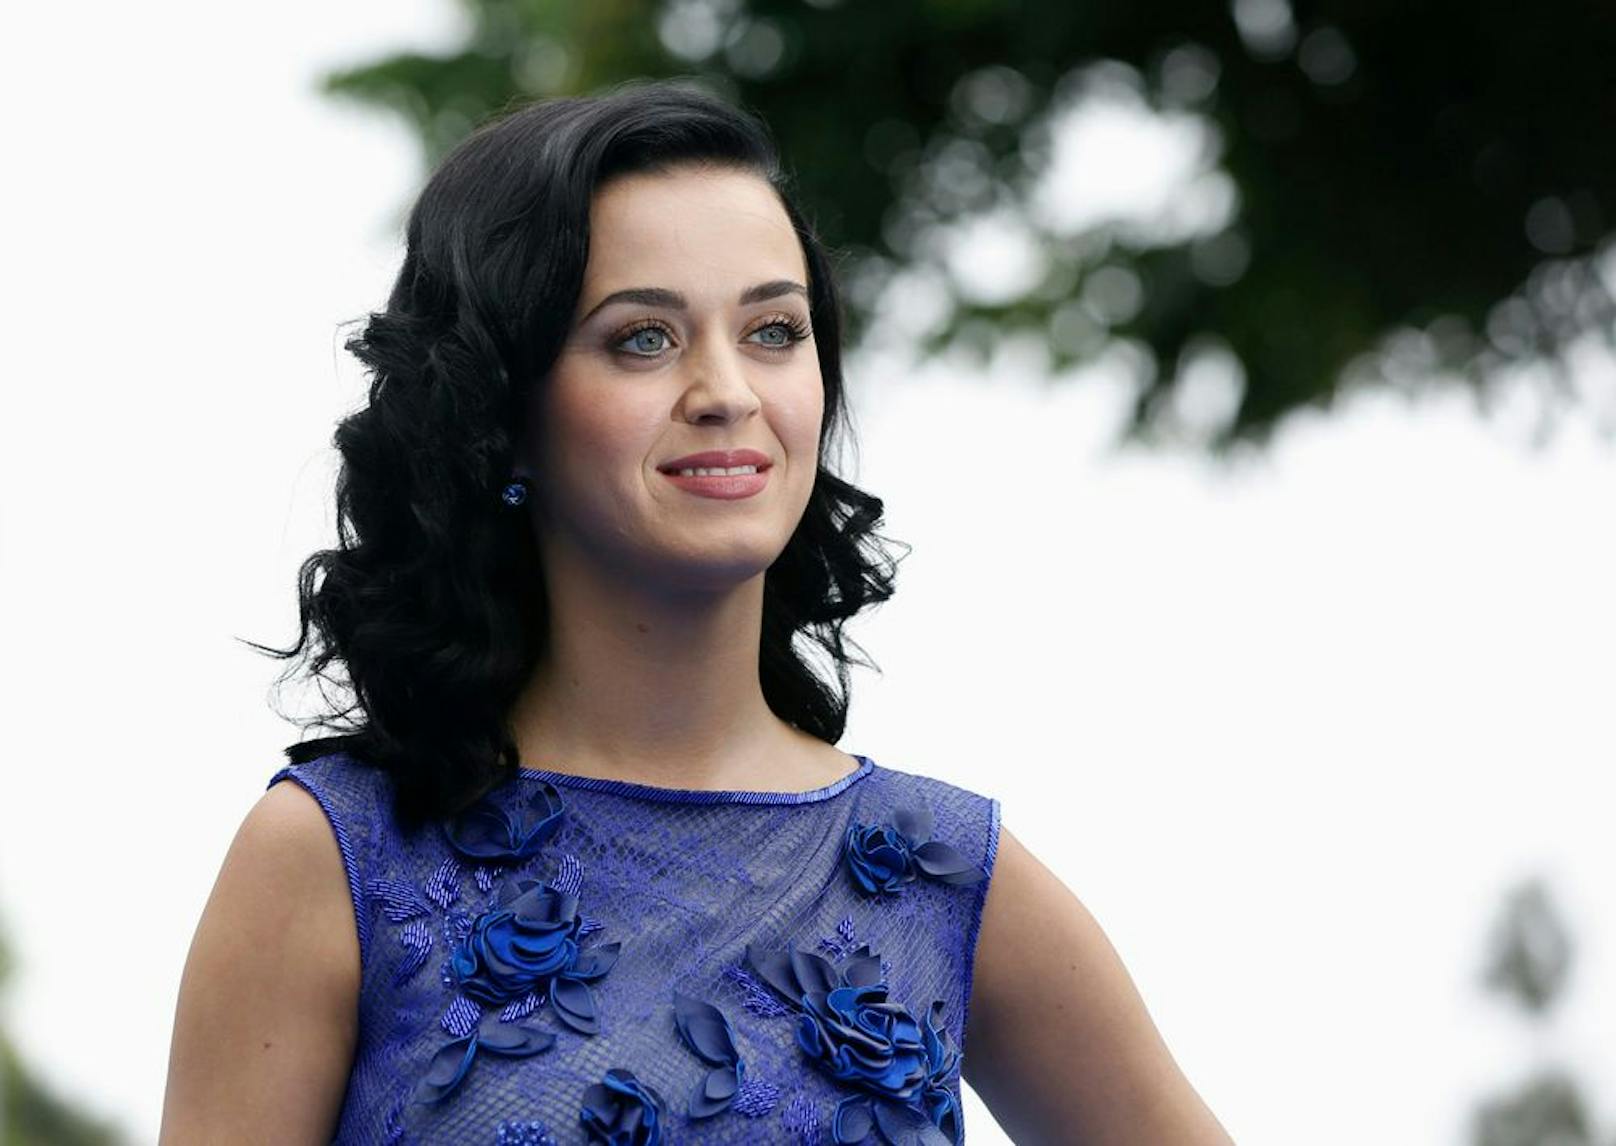 Sorge um Katy Perry – Video schockiert Fans